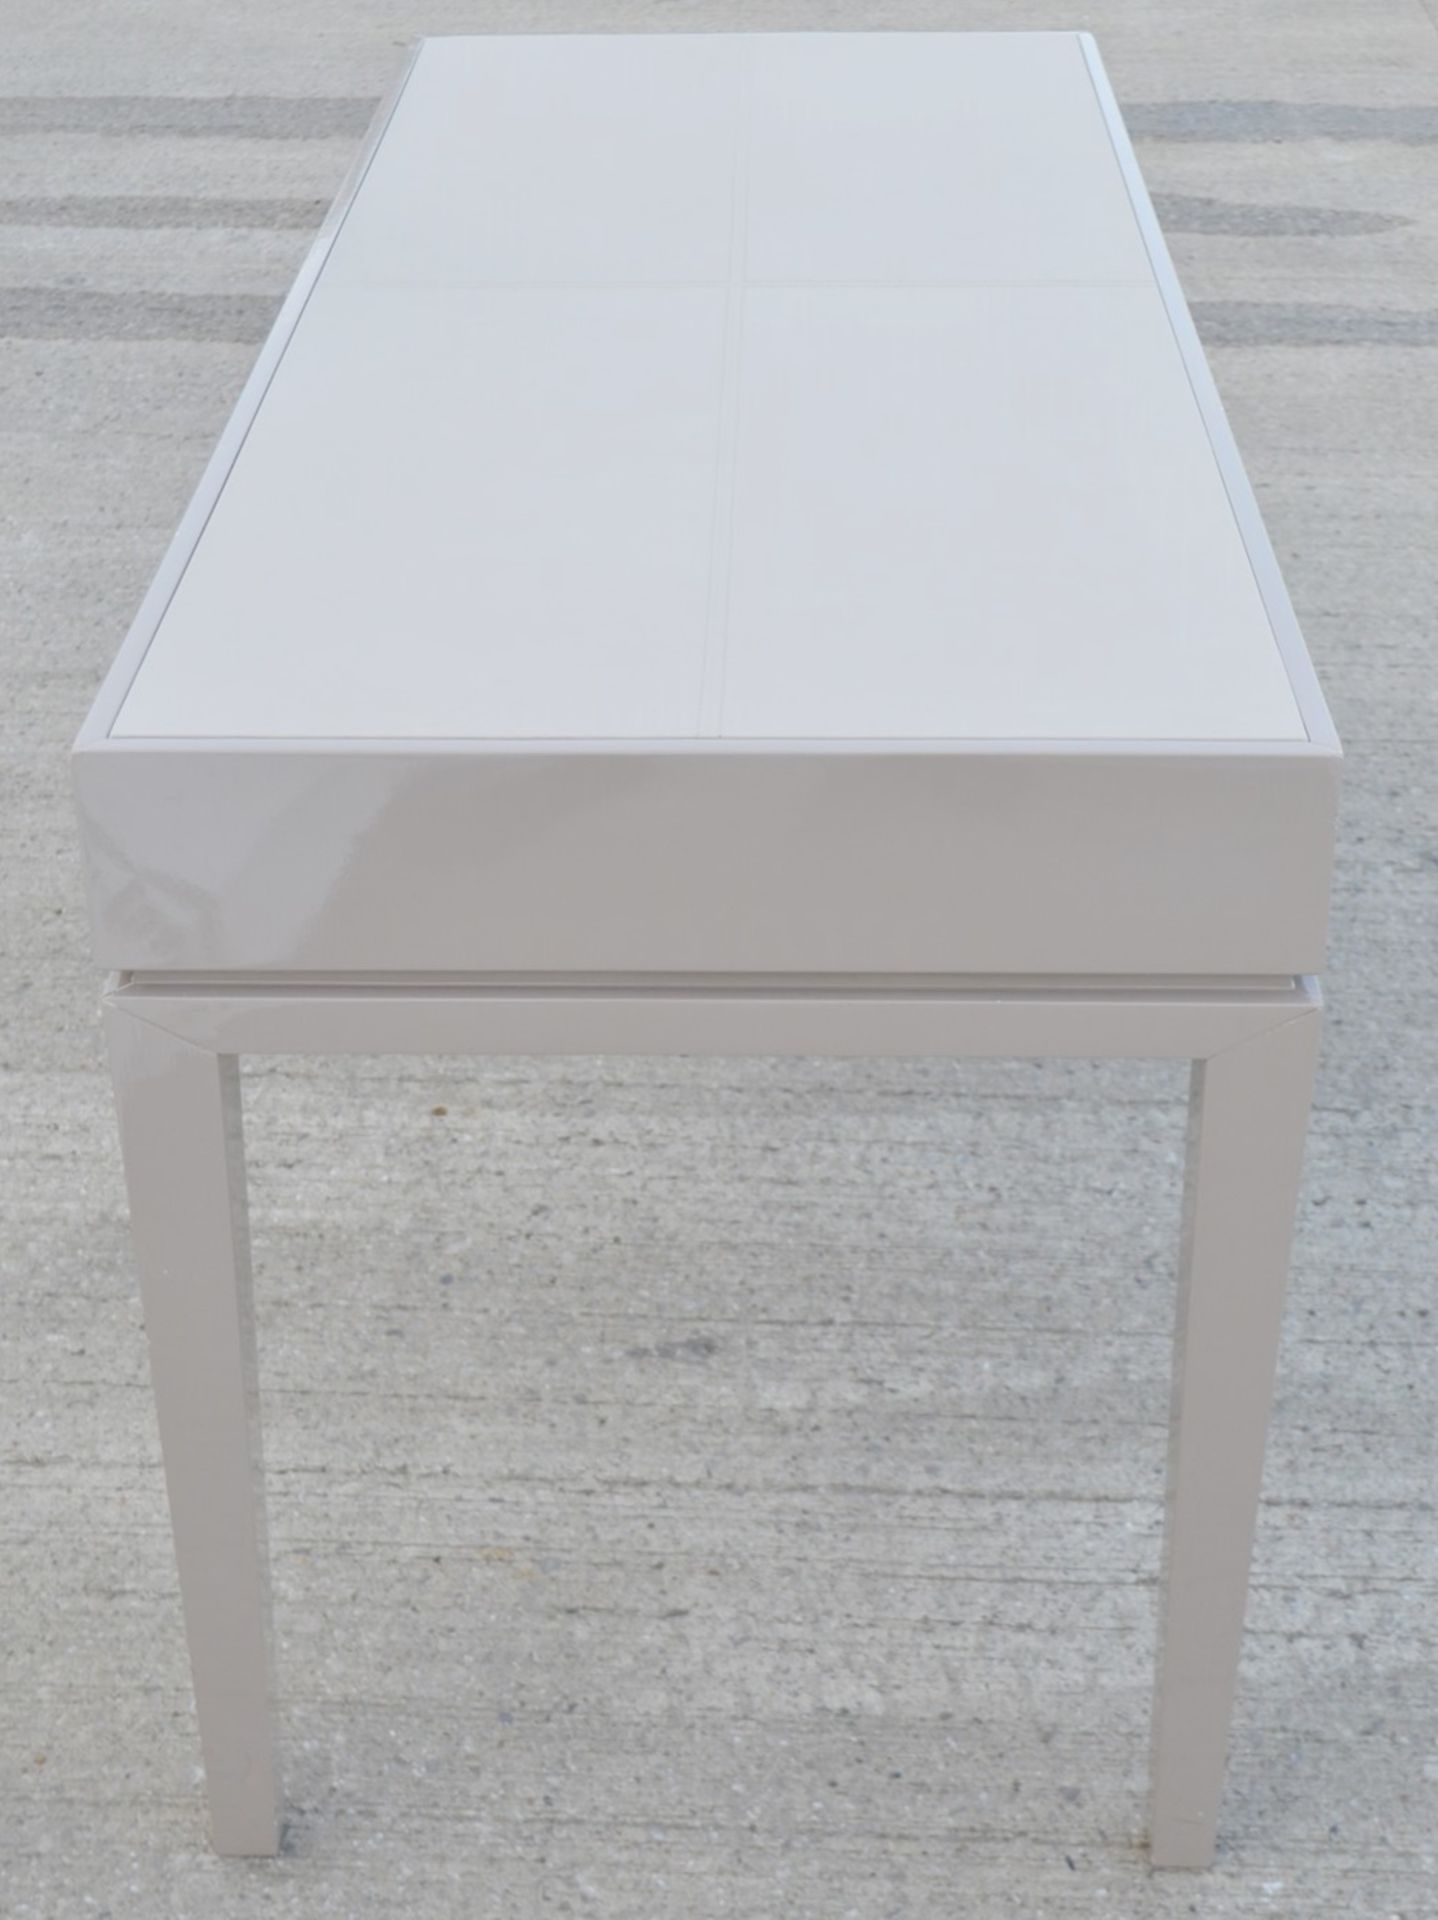 1 x FRATO 'Buzios' Designer Desk - Made In Italy - 160 x D65 x H78cm - Original Price £2,759 - Image 10 of 13